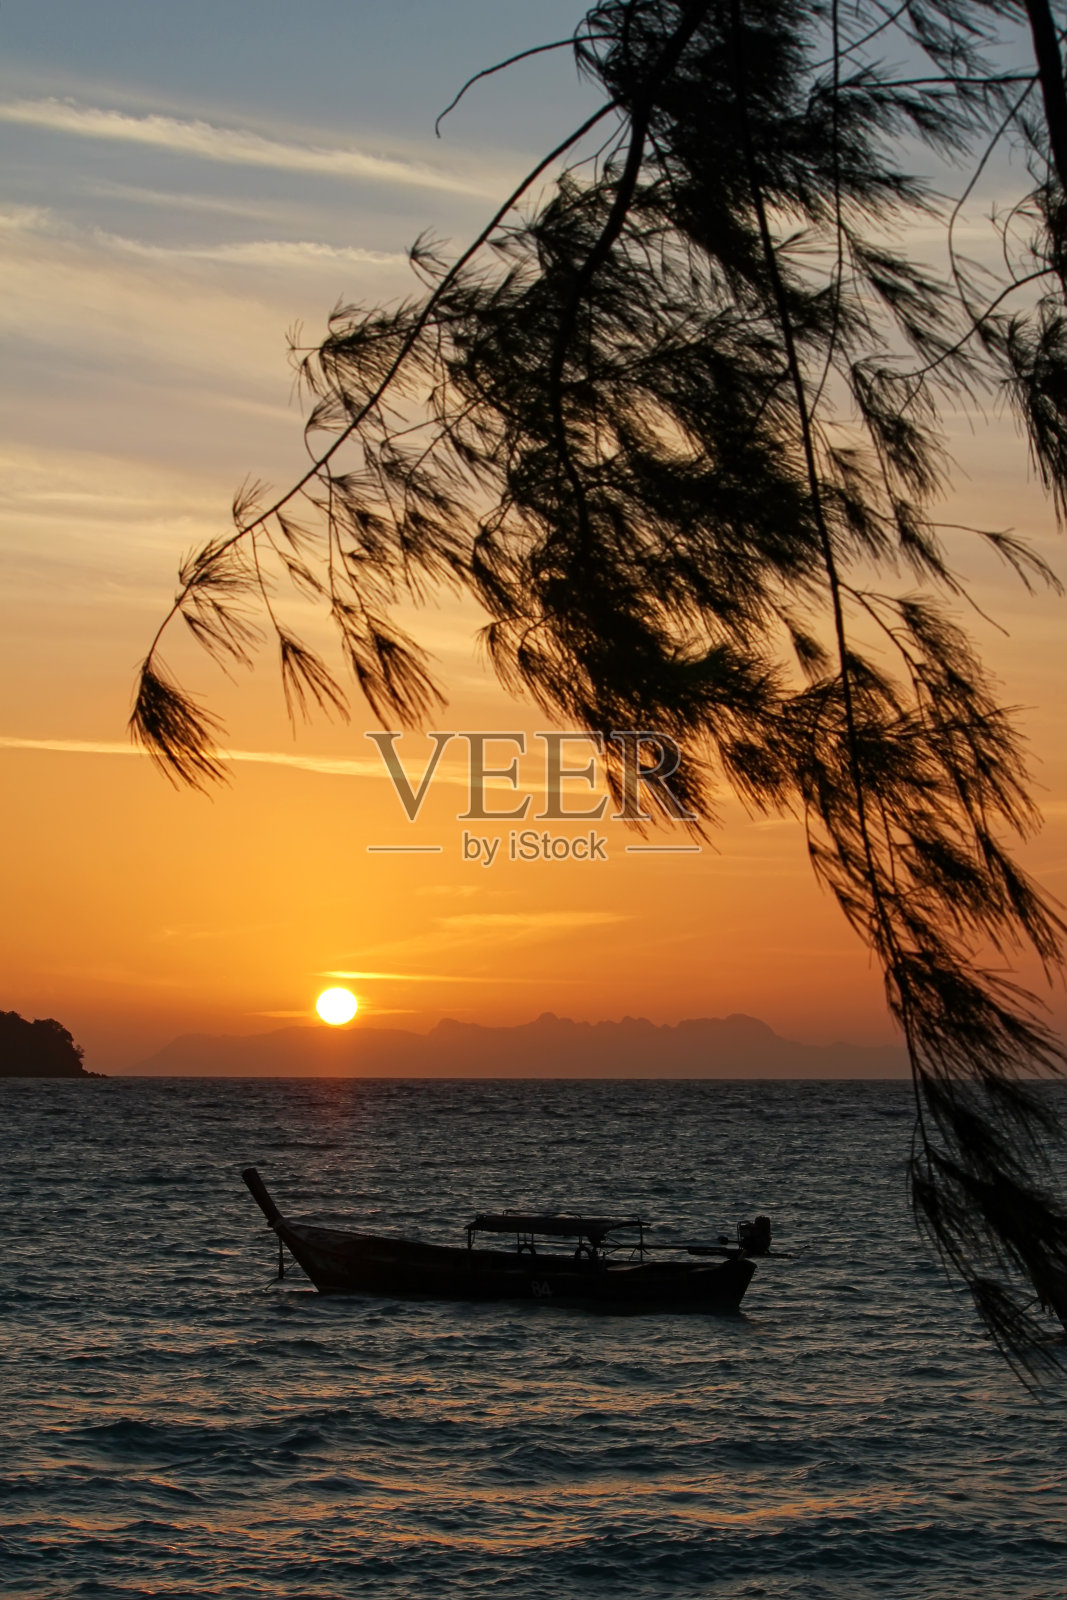 美丽的泰国旅游岛“Koh Lipe”和平的海沙滩与晨曦日出天空背景景观和剪影船漂浮在海上照片摄影图片